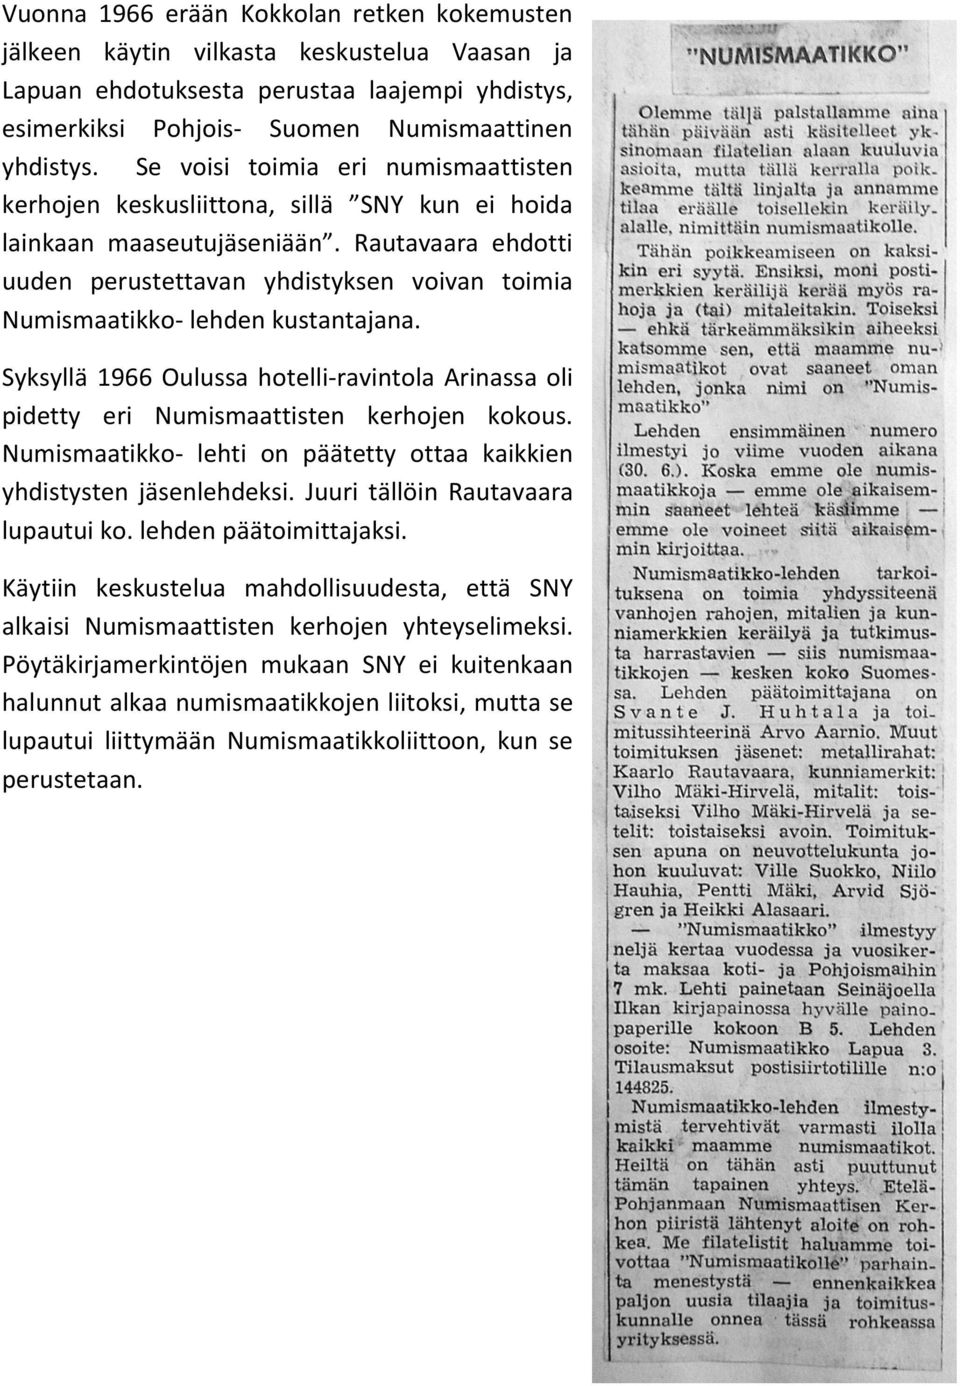 Rautavaara ehdotti uuden perustettavan yhdistyksen voivan toimia Numismaatikko- lehden kustantajana. Syksyllä 1966 Oulussa hotelli-ravintola Arinassa oli pidetty eri Numismaattisten kerhojen kokous.